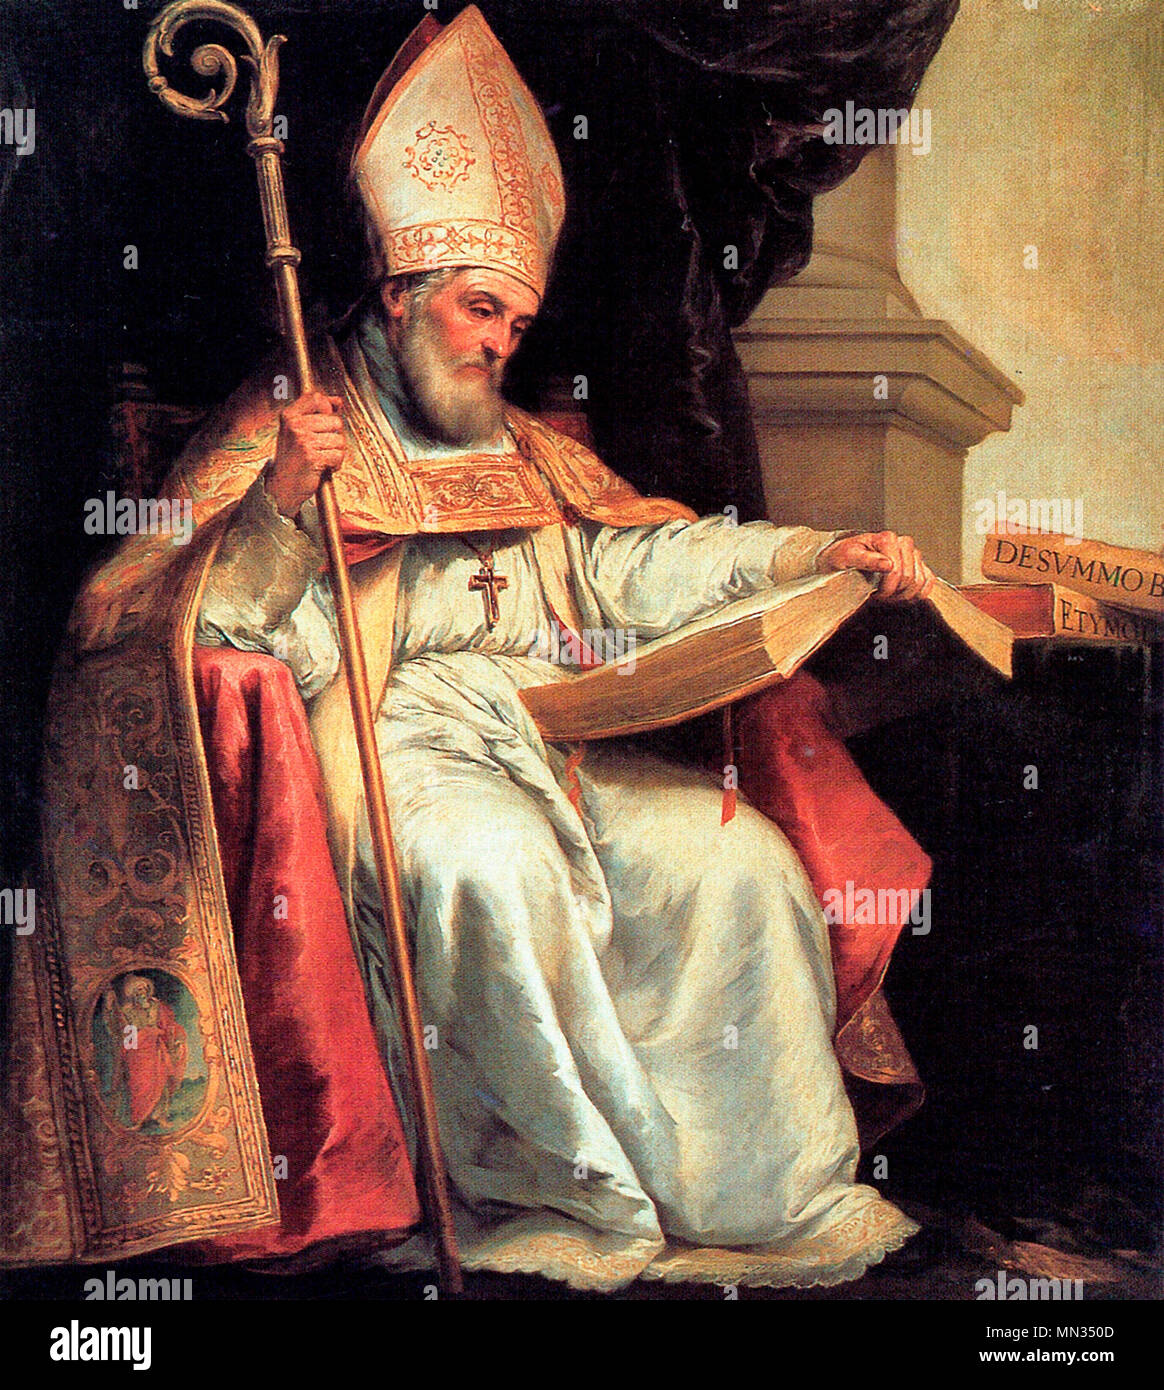 Hl. Isidor von Sevilla, Bischof, ein 7. Jahrhundert Arzt der Kirche, mit einem Buch, einem gemeinsamen ikonographischen Objekt für einen Arzt, Bartolomé Esteban Murillo, 1655 Stockfoto